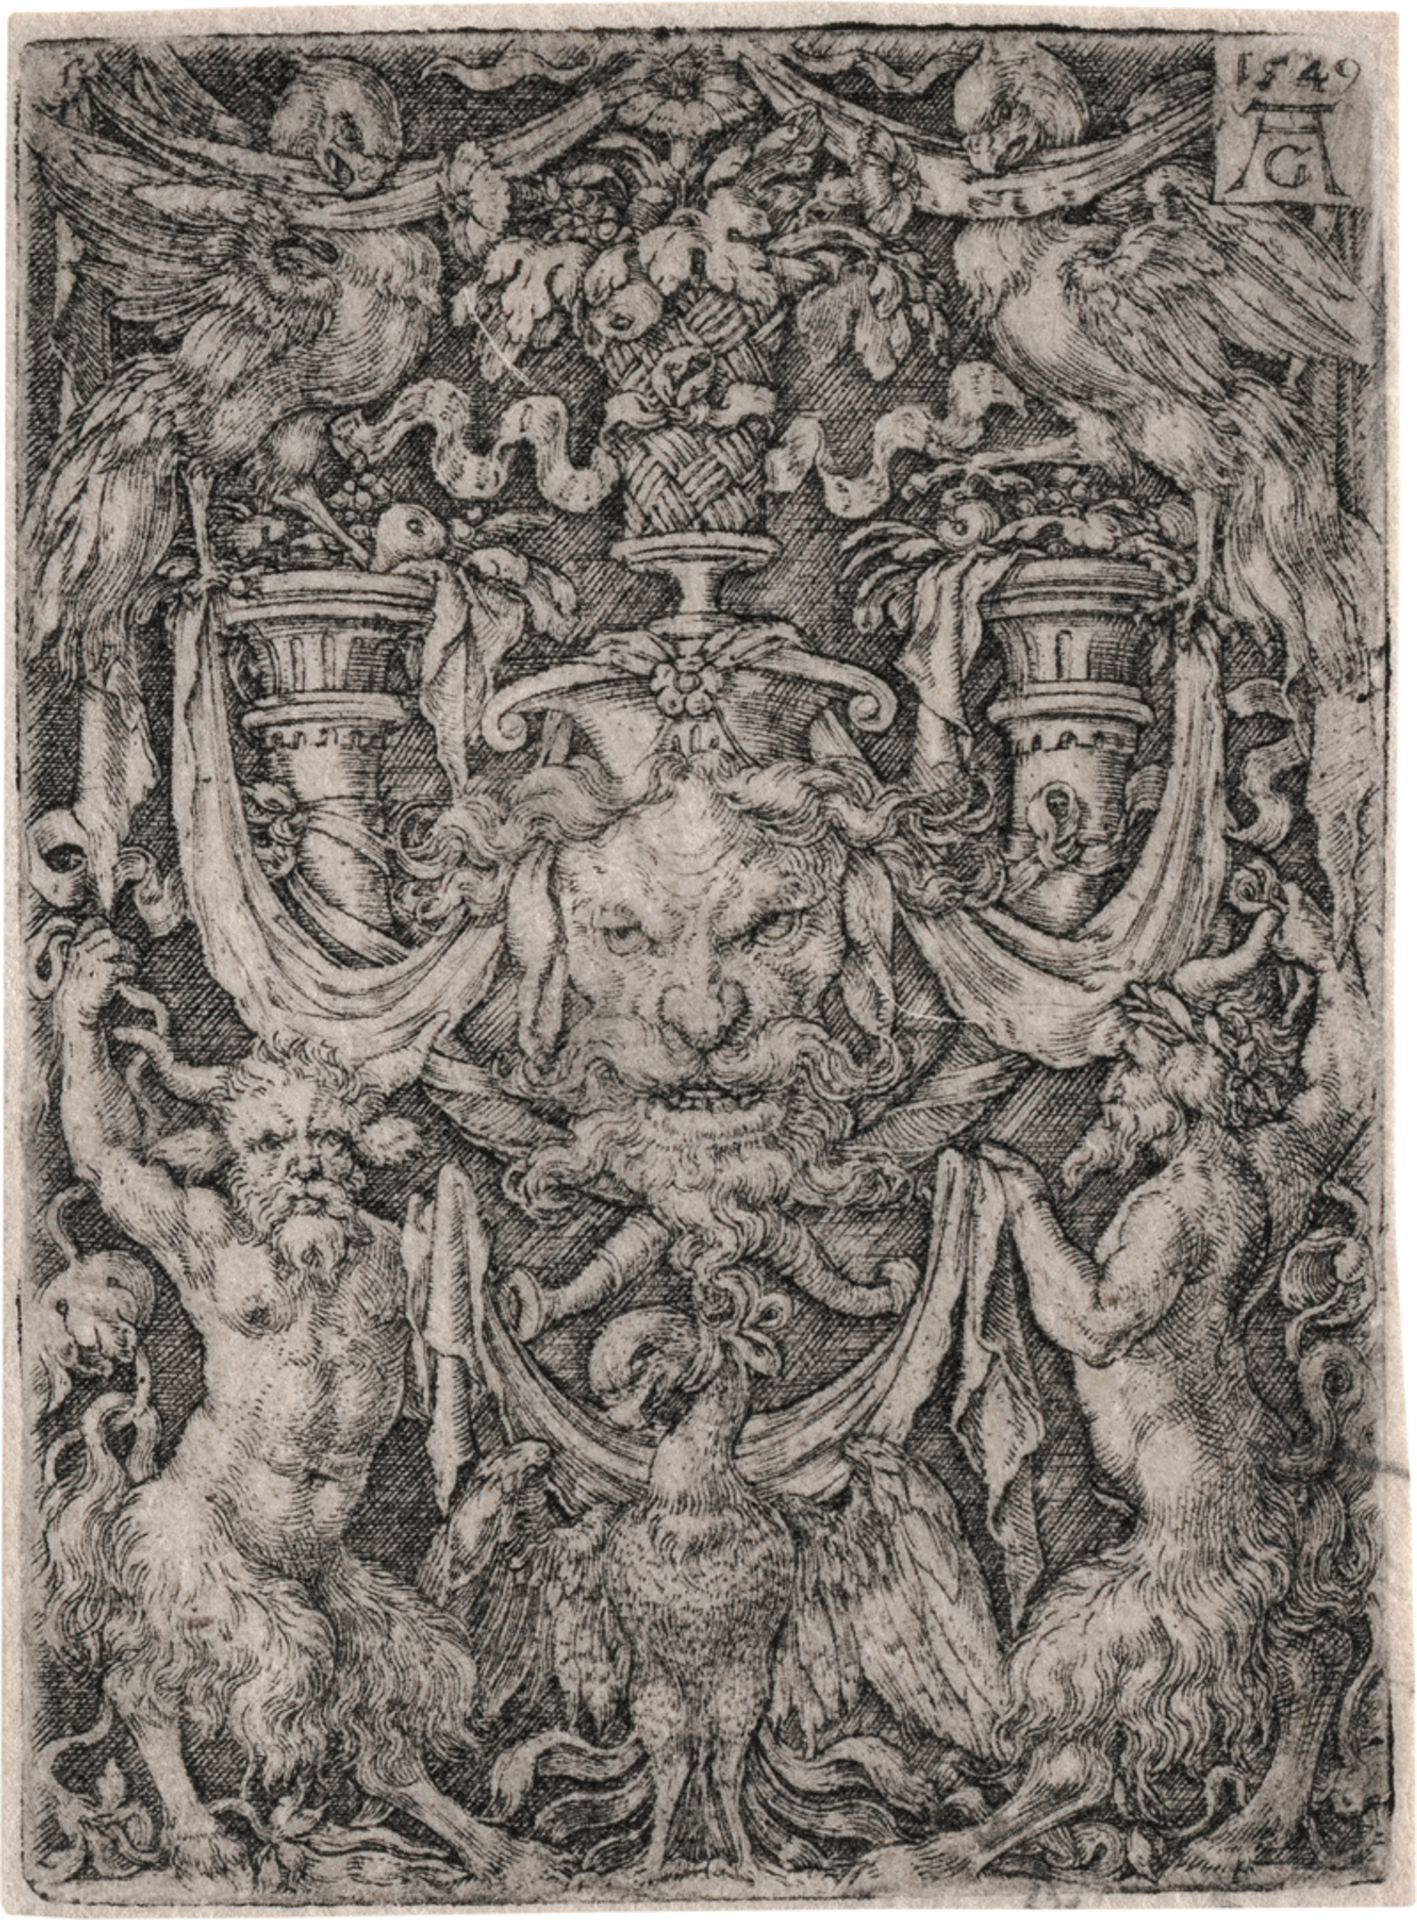 Aldegrever, Heinrich: Ornamententwurf mit Maske und Adler zwischen zwei Faunen